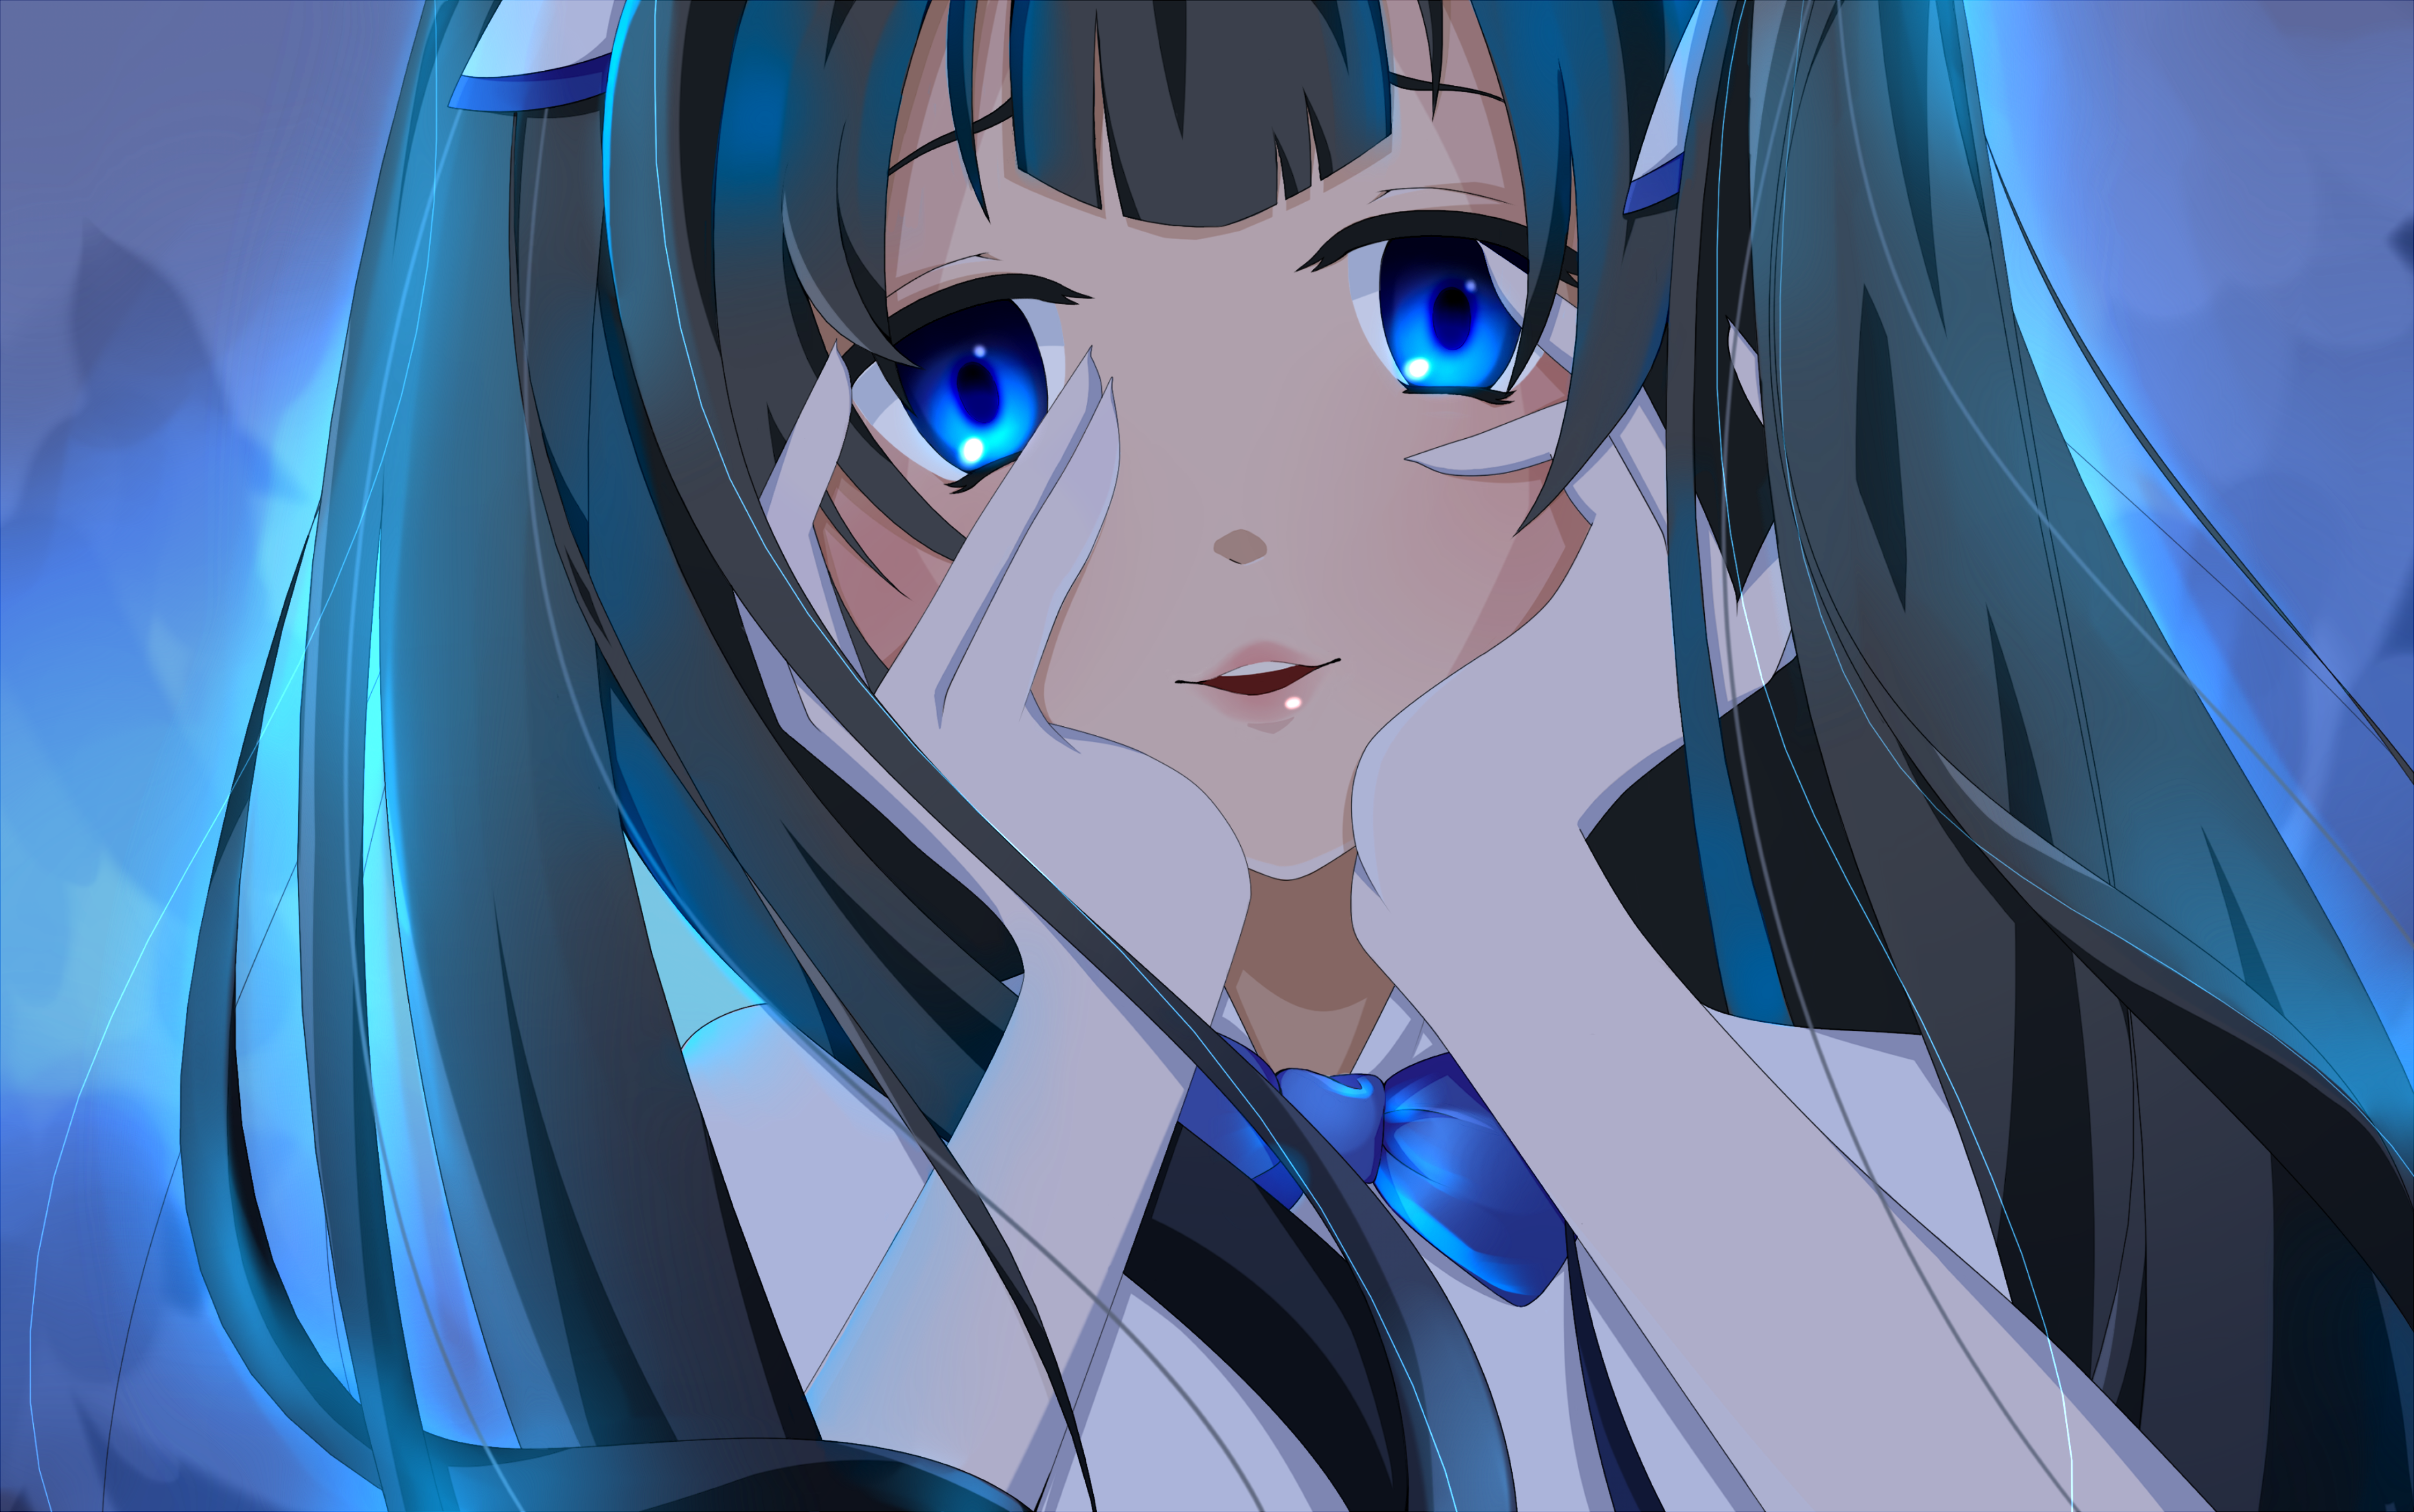 Anime 4500x2819 anime girls Dungeon ni Deai wo Motomeru no wa Machigatteiru Darou ka Hestia blue eyes anime face hand on face looking at viewer long hair